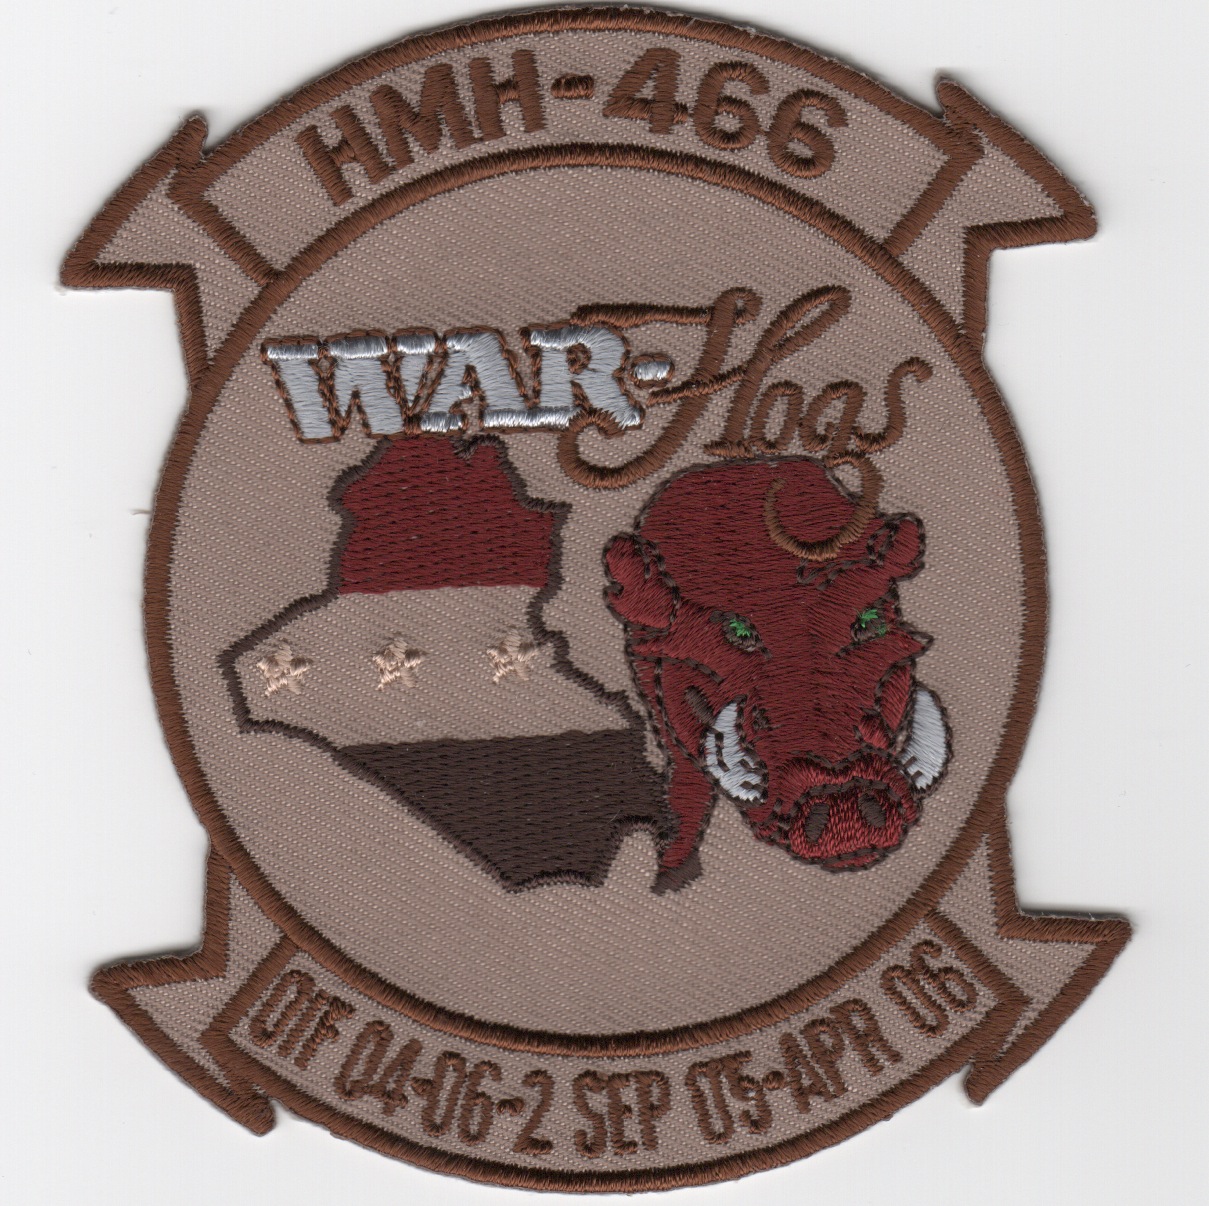 HMH-466 'War Hogs' OIF 04-06 (Des)